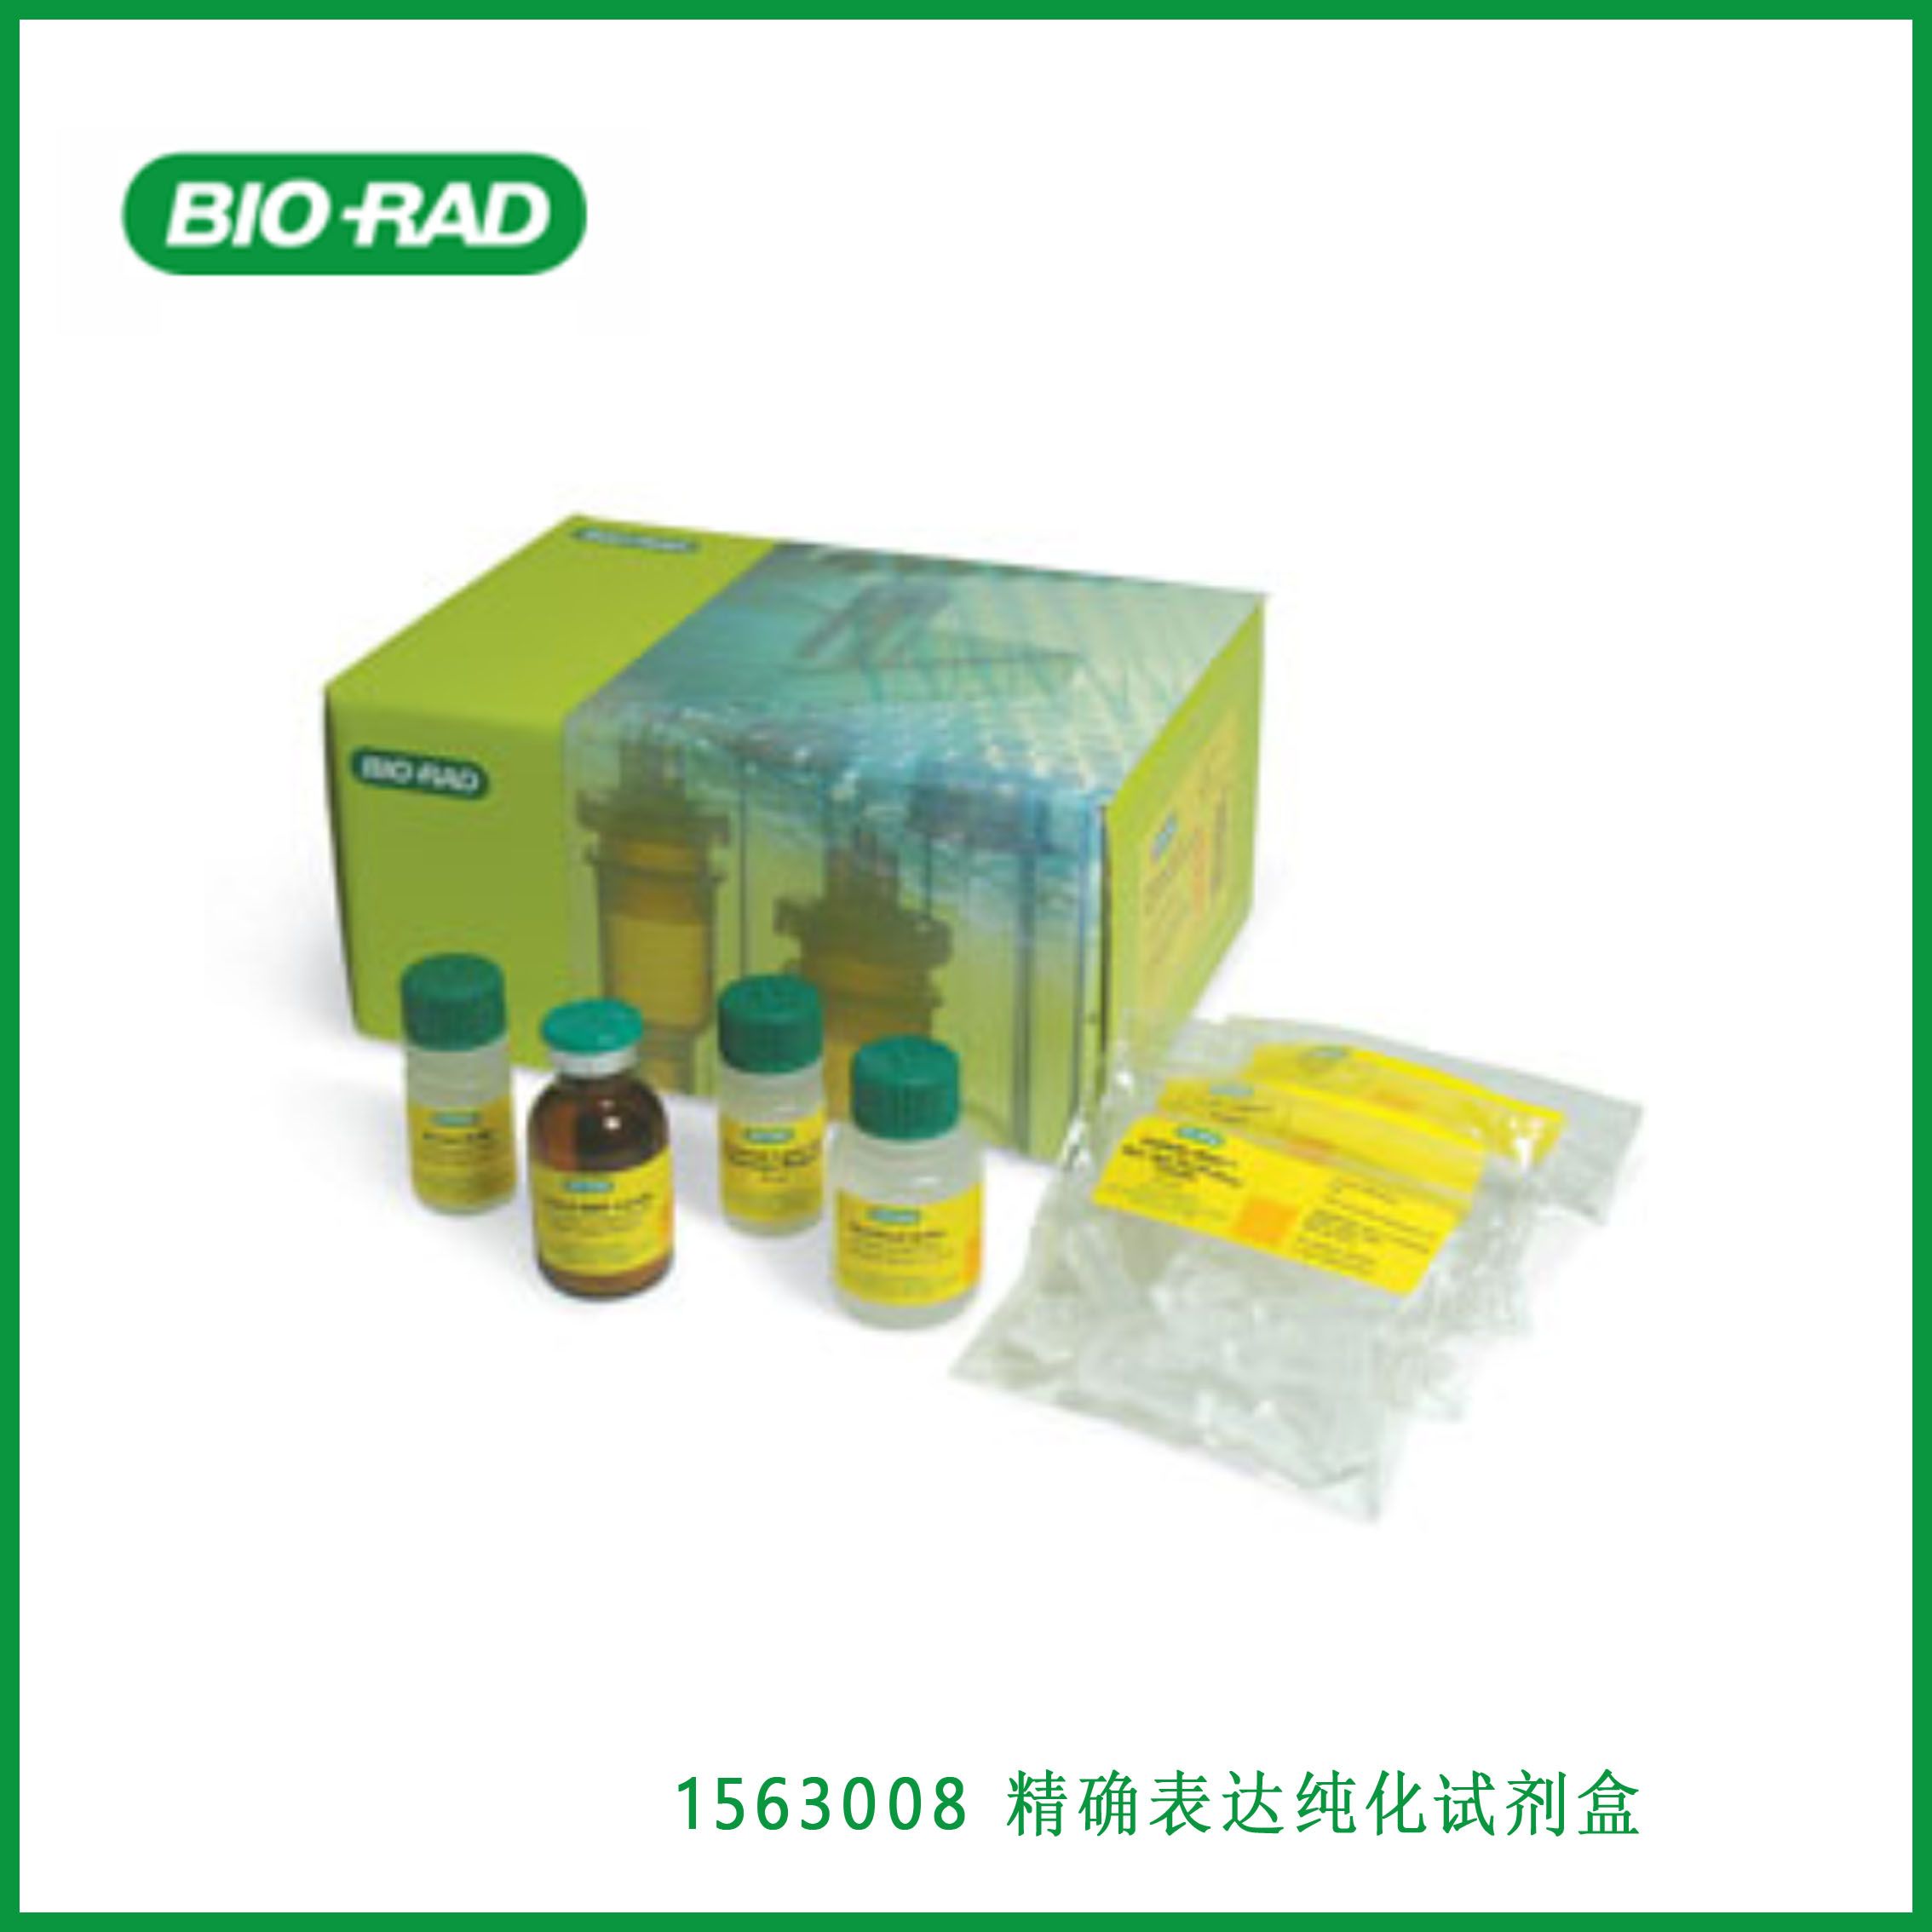 伯乐Bio-Rad 1563008Profinity eXact Expression and Purification Starter Kit，精确表达纯化试剂盒,现货